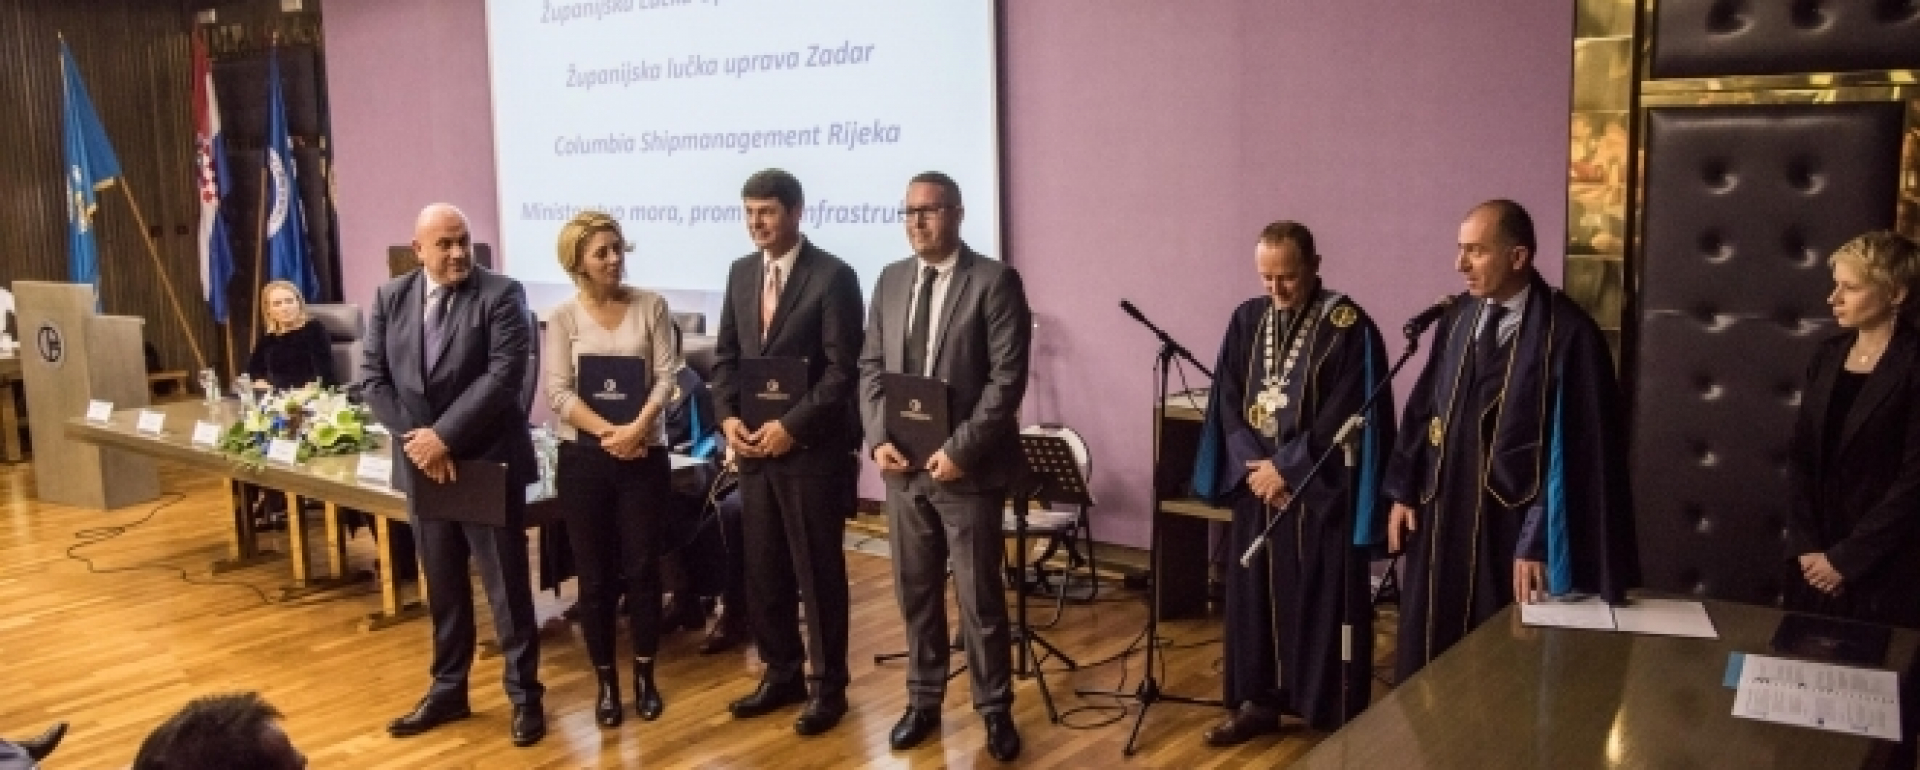 Pomorski fakultet u Rijeci dodijelio zahvalnicu Županijskoj lučkoj upravi Zadar